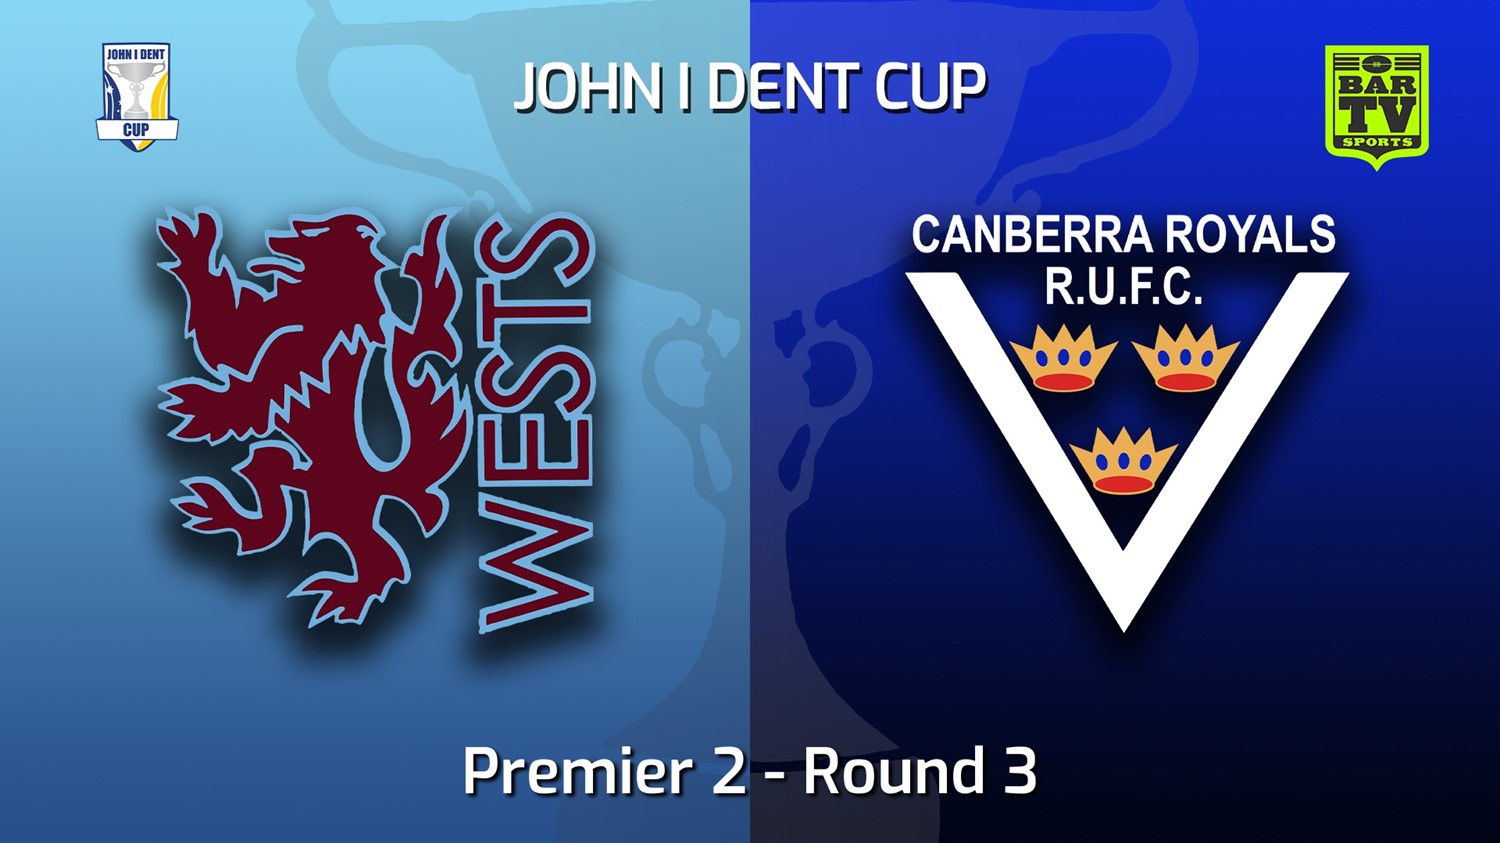 220507-John I Dent (ACT) Round 3 - Premier 2 - Wests Lions v Canberra Royals Slate Image